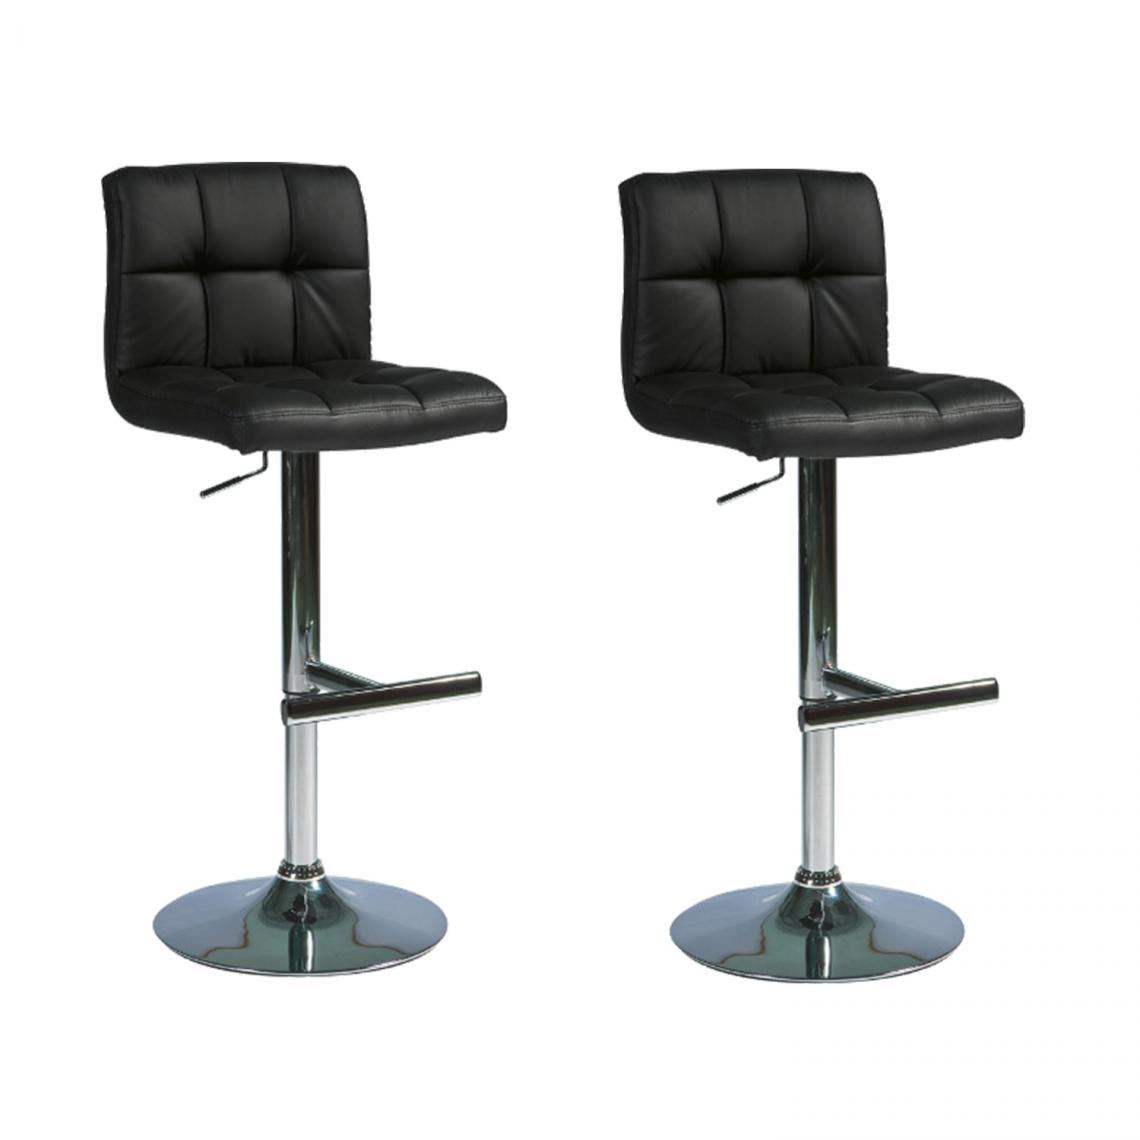 Hucoco - KRON - Lot de 2 tabourets de bar style moderne - Hauteur réglable 92-115 cm - Chaise de bar - Noir - Chaises